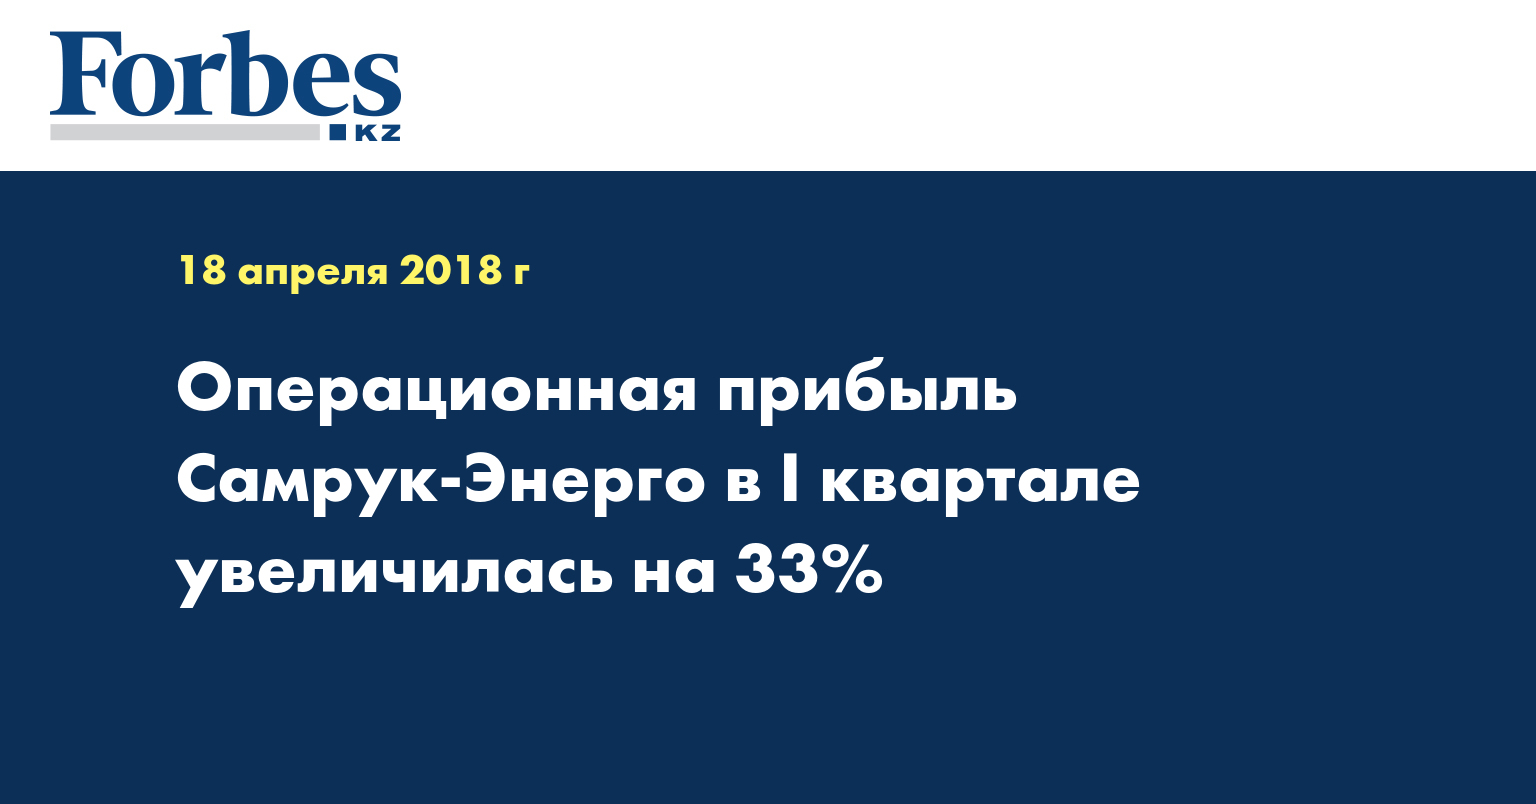 Операционная прибыль Самрук-Энерго в I квартале увеличилась на 33%  